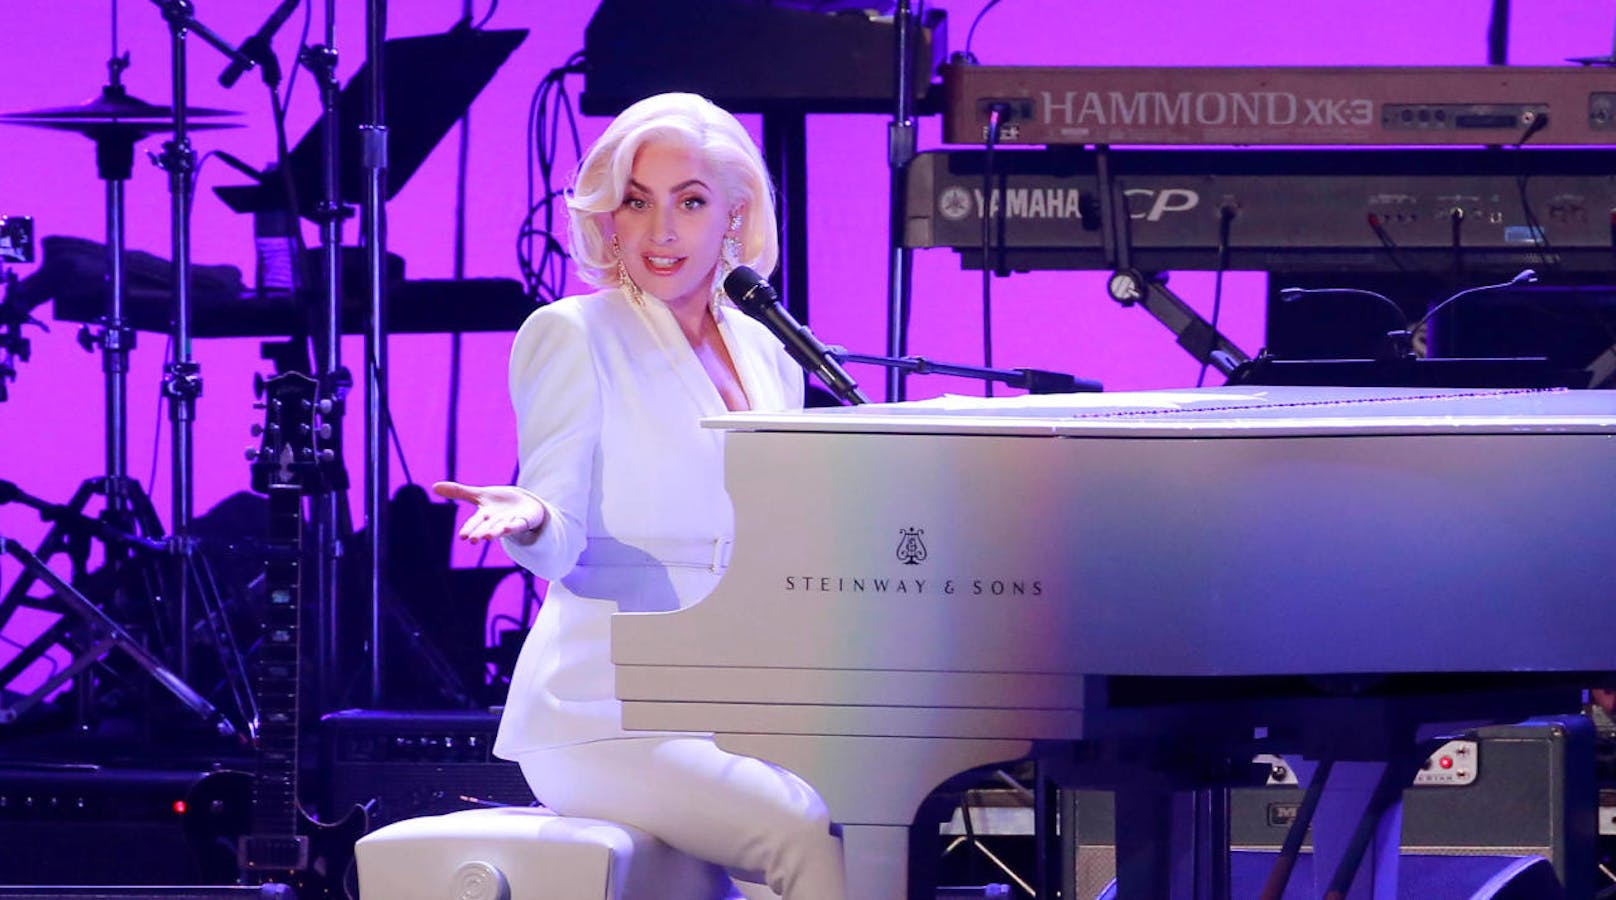 Lady Gaga singt bei Bidens Amtseinführung